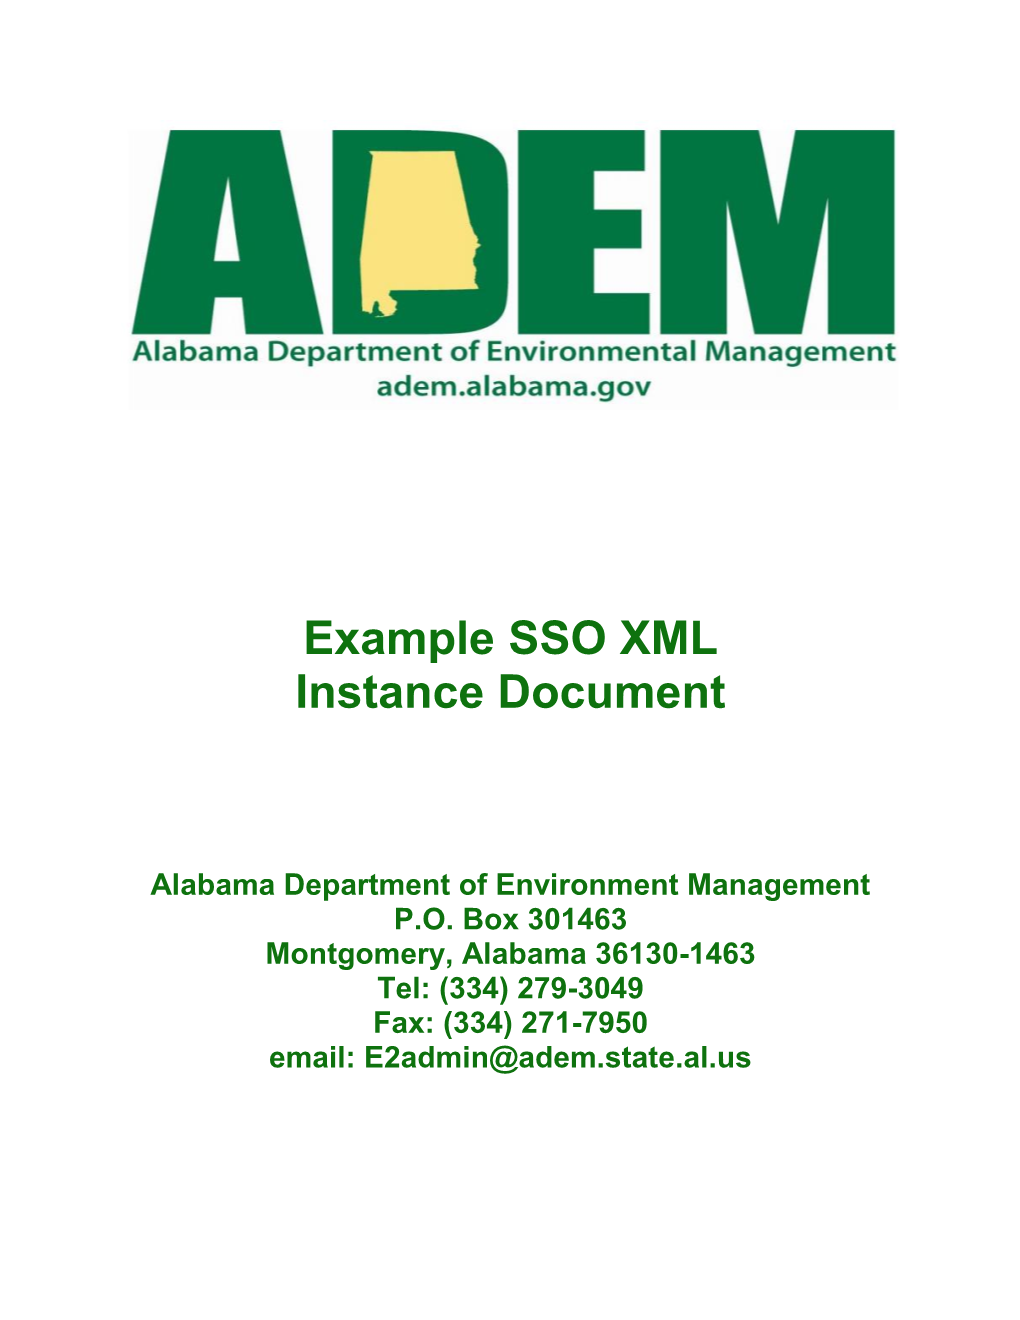 Example SSO XML Instance Document